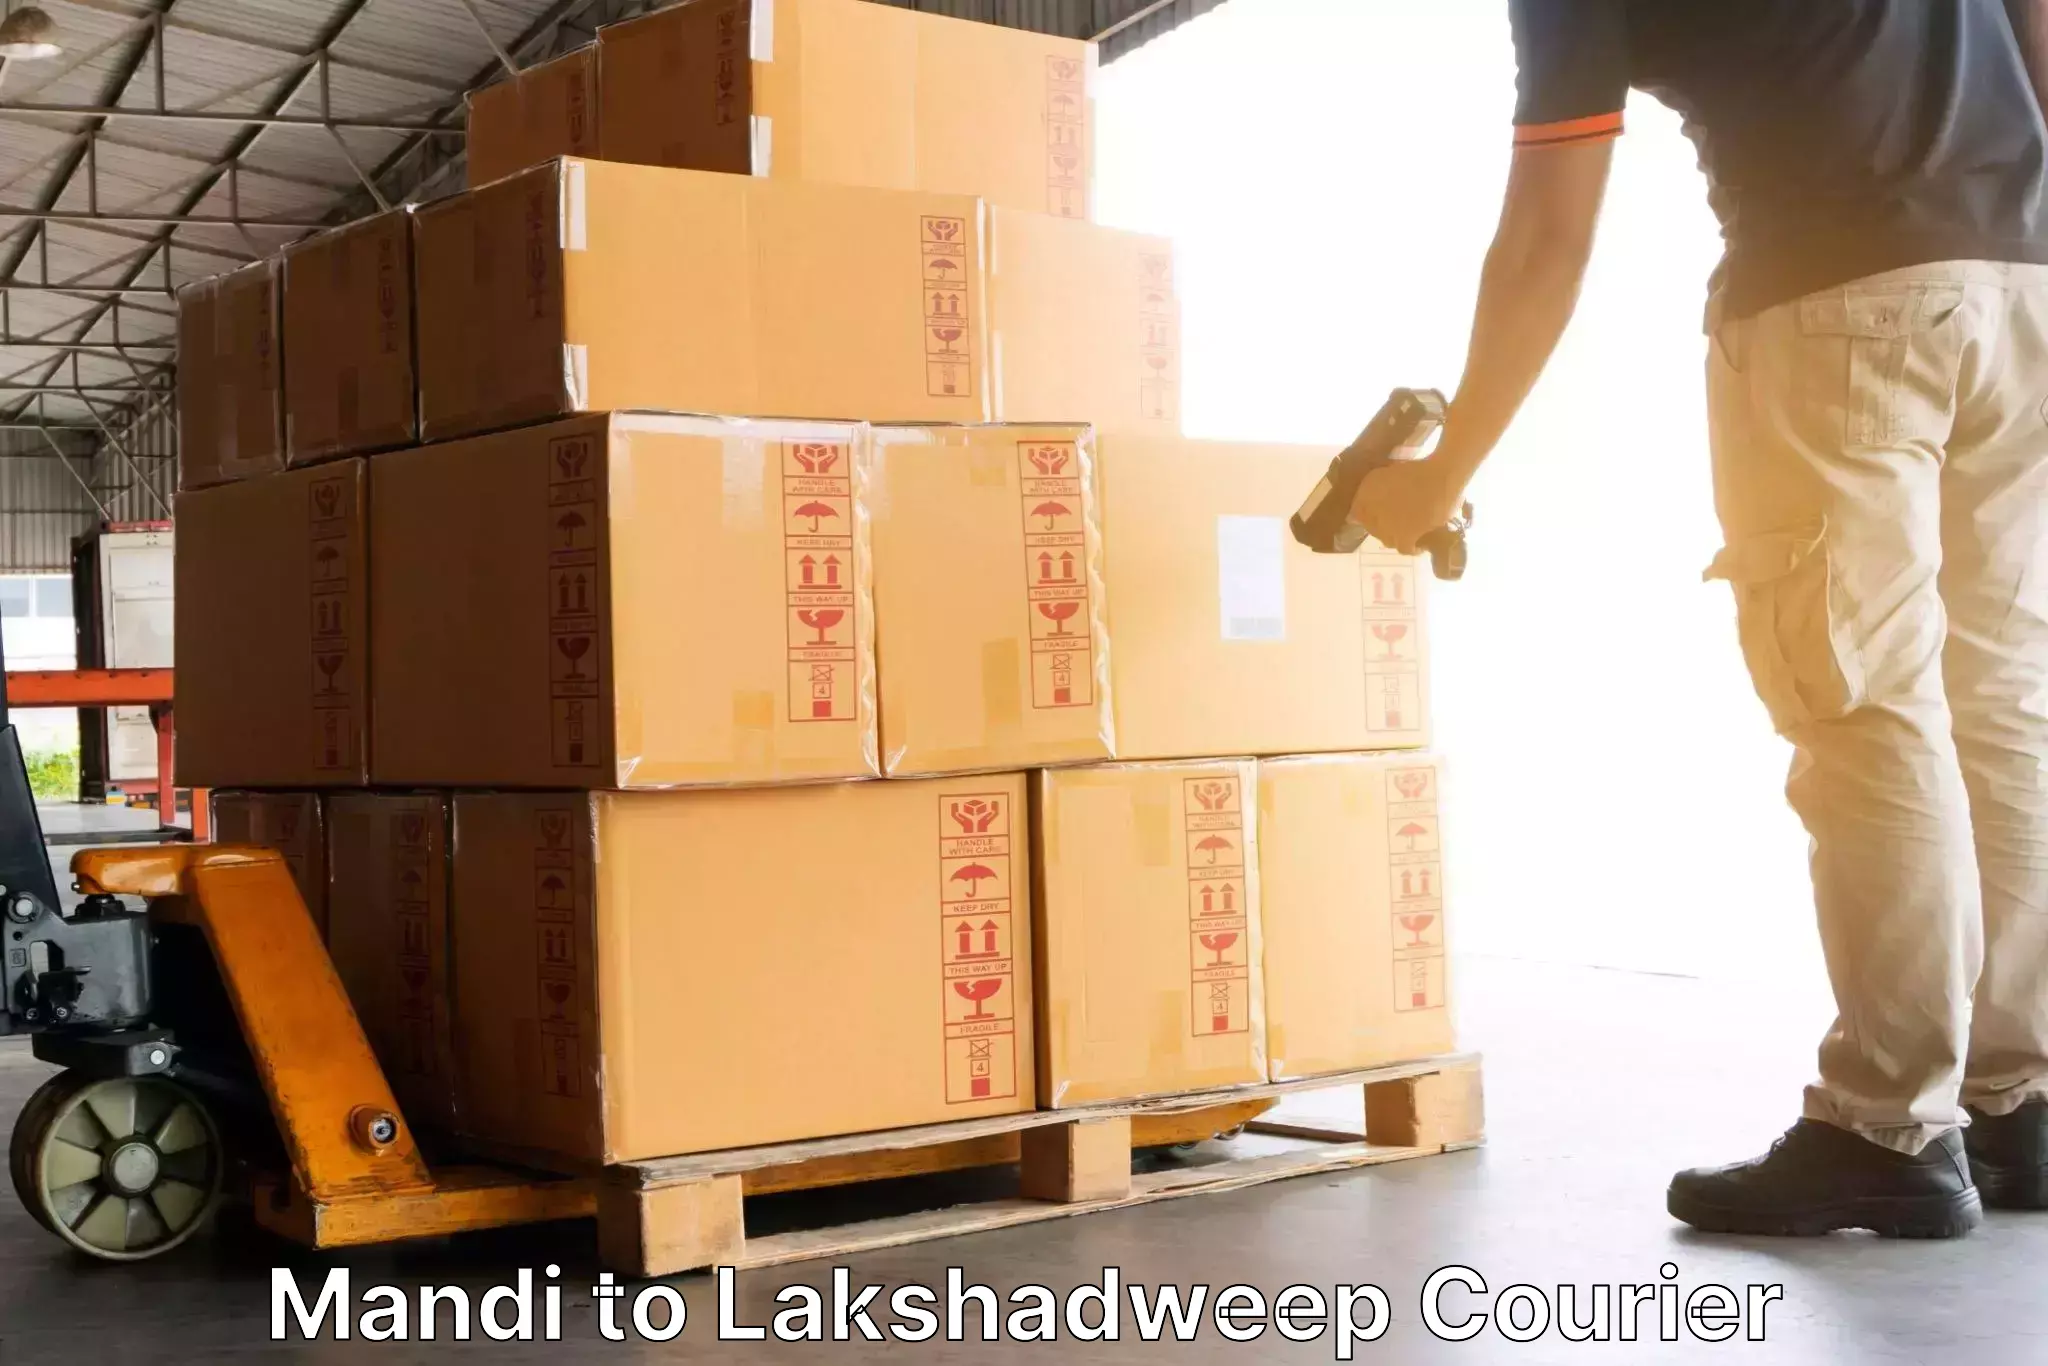 Package tracking Mandi to Lakshadweep